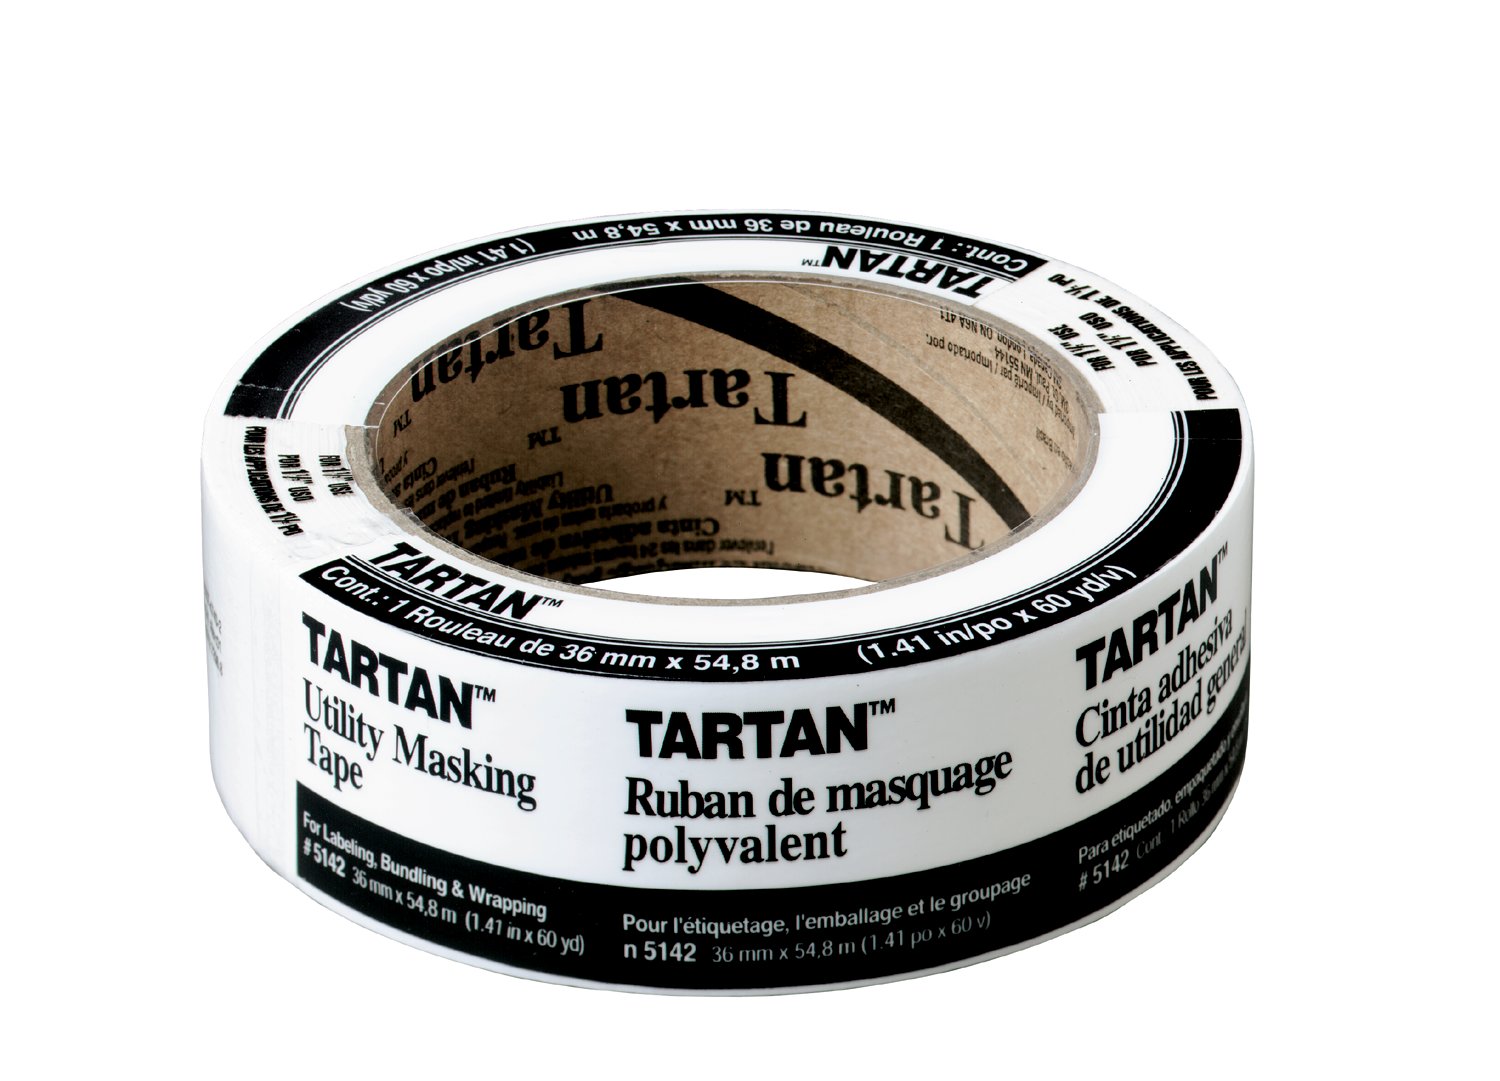 7000127114 - Tartan Masking Tape 5142-36A, 1.41 in x 60.1 yd (36 mm x 55 m) 24
rls/cs